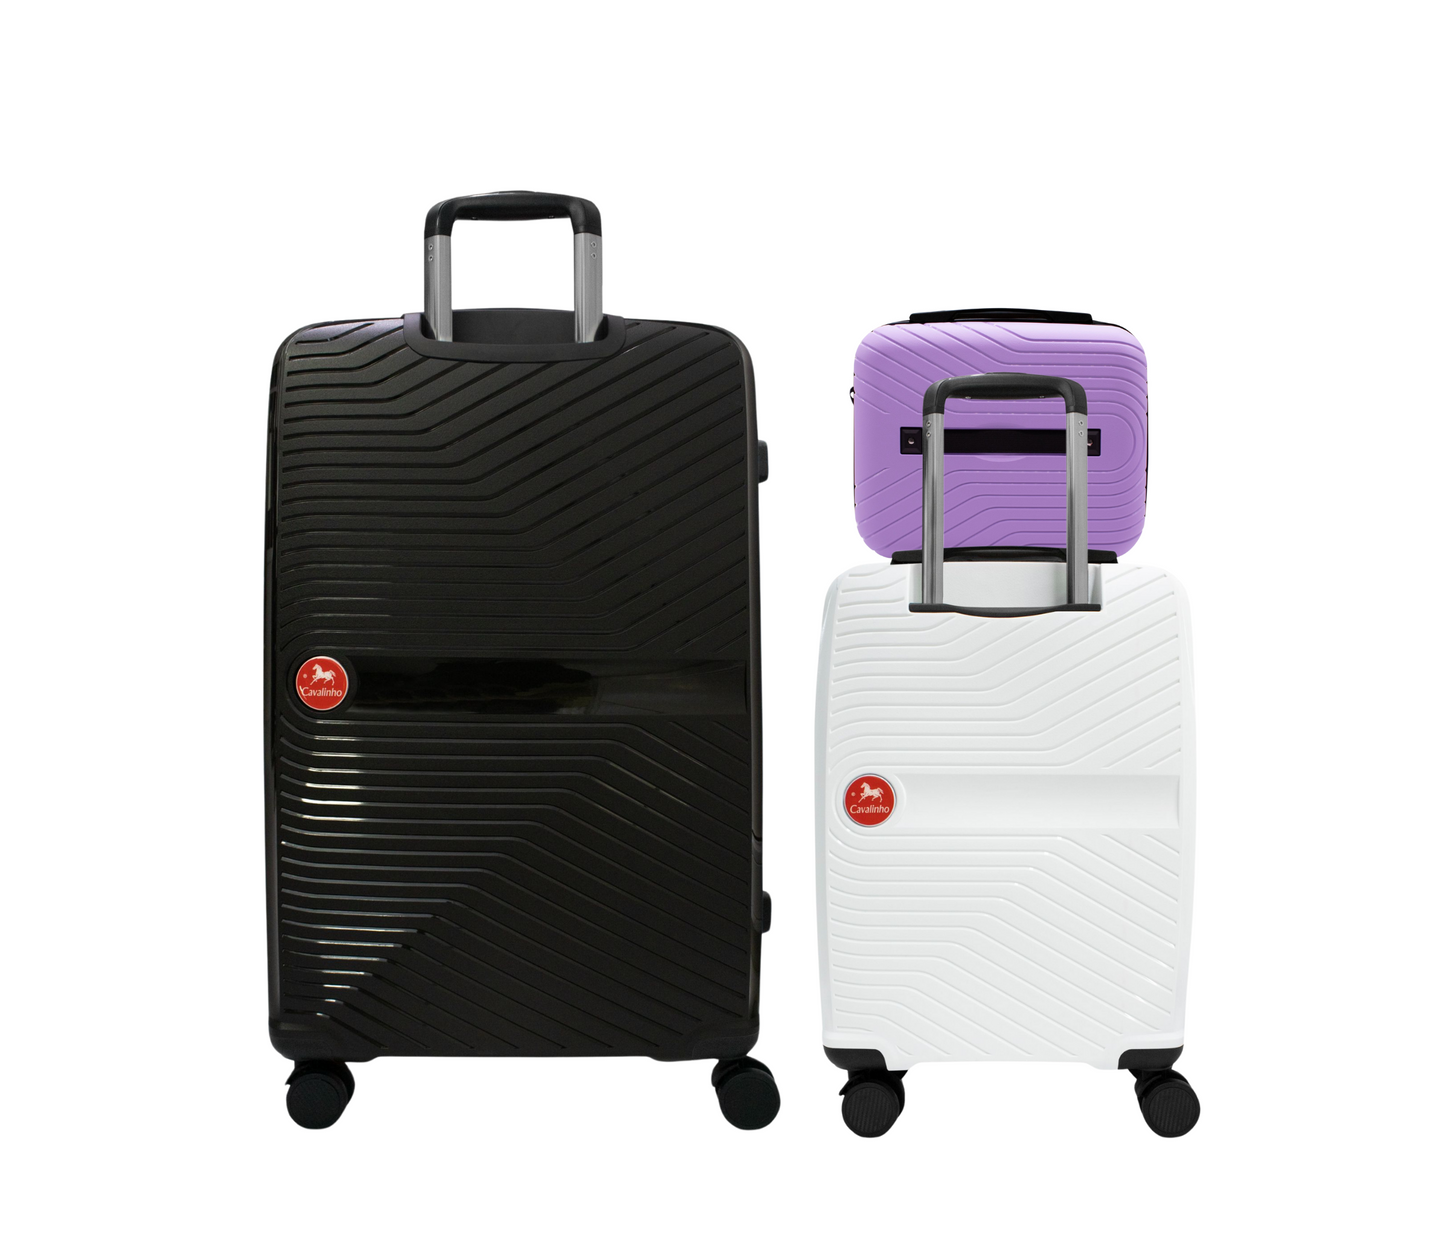 Cavalinho Canada & USA Colorful 3 Piece Luggage Set (15", 19" & 28") - Lilac White Black - 68020004.390601.S151928._3